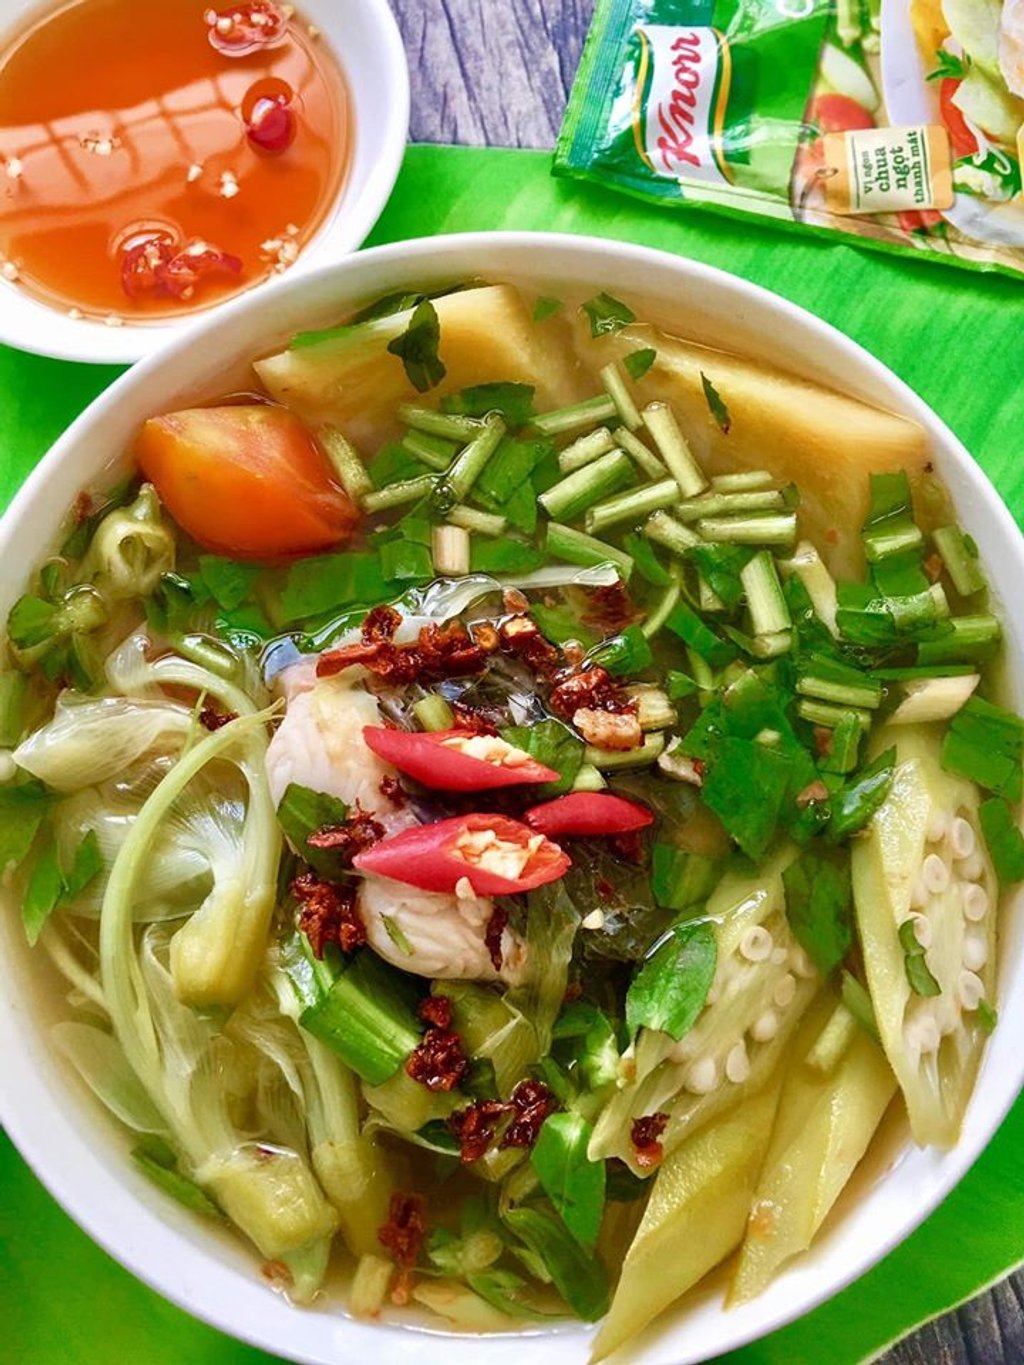 Bộ sưu tập các món canh chua của Trang: Nấu với bông so đũa, rau nhút nấm cá lóc, sườn nấu rau rút, bông so đũa nấu tôm, và ngó sen cá lóc.